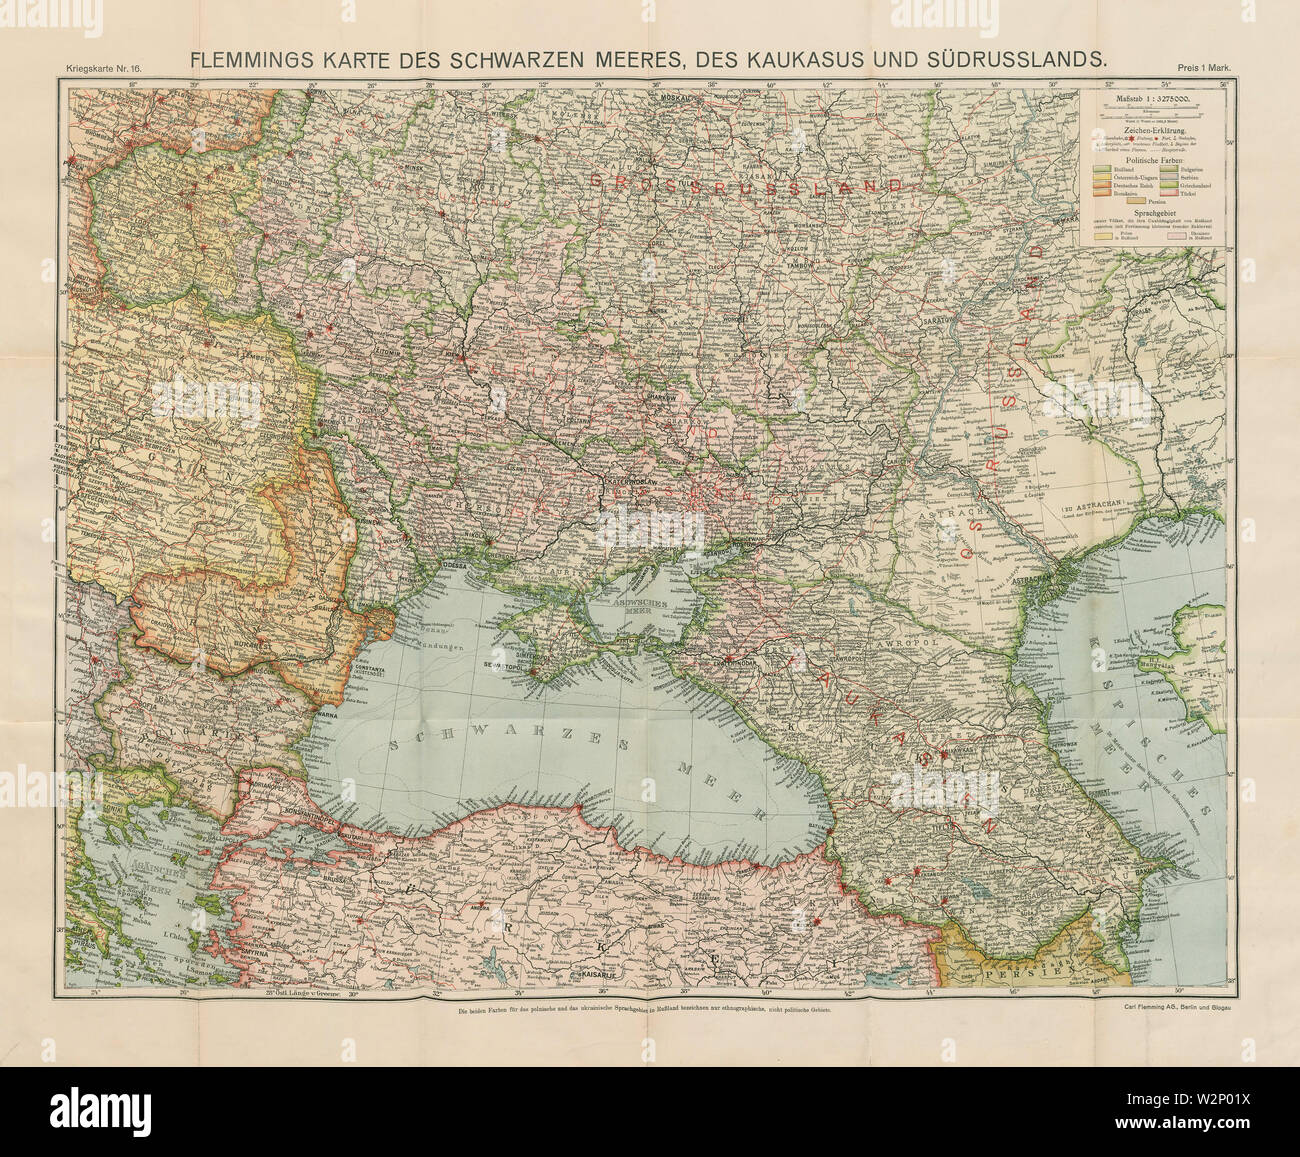 16-Karte des Schwarzen Meeres, des Kaukasus und Südrusslands (1914) Stock Photo